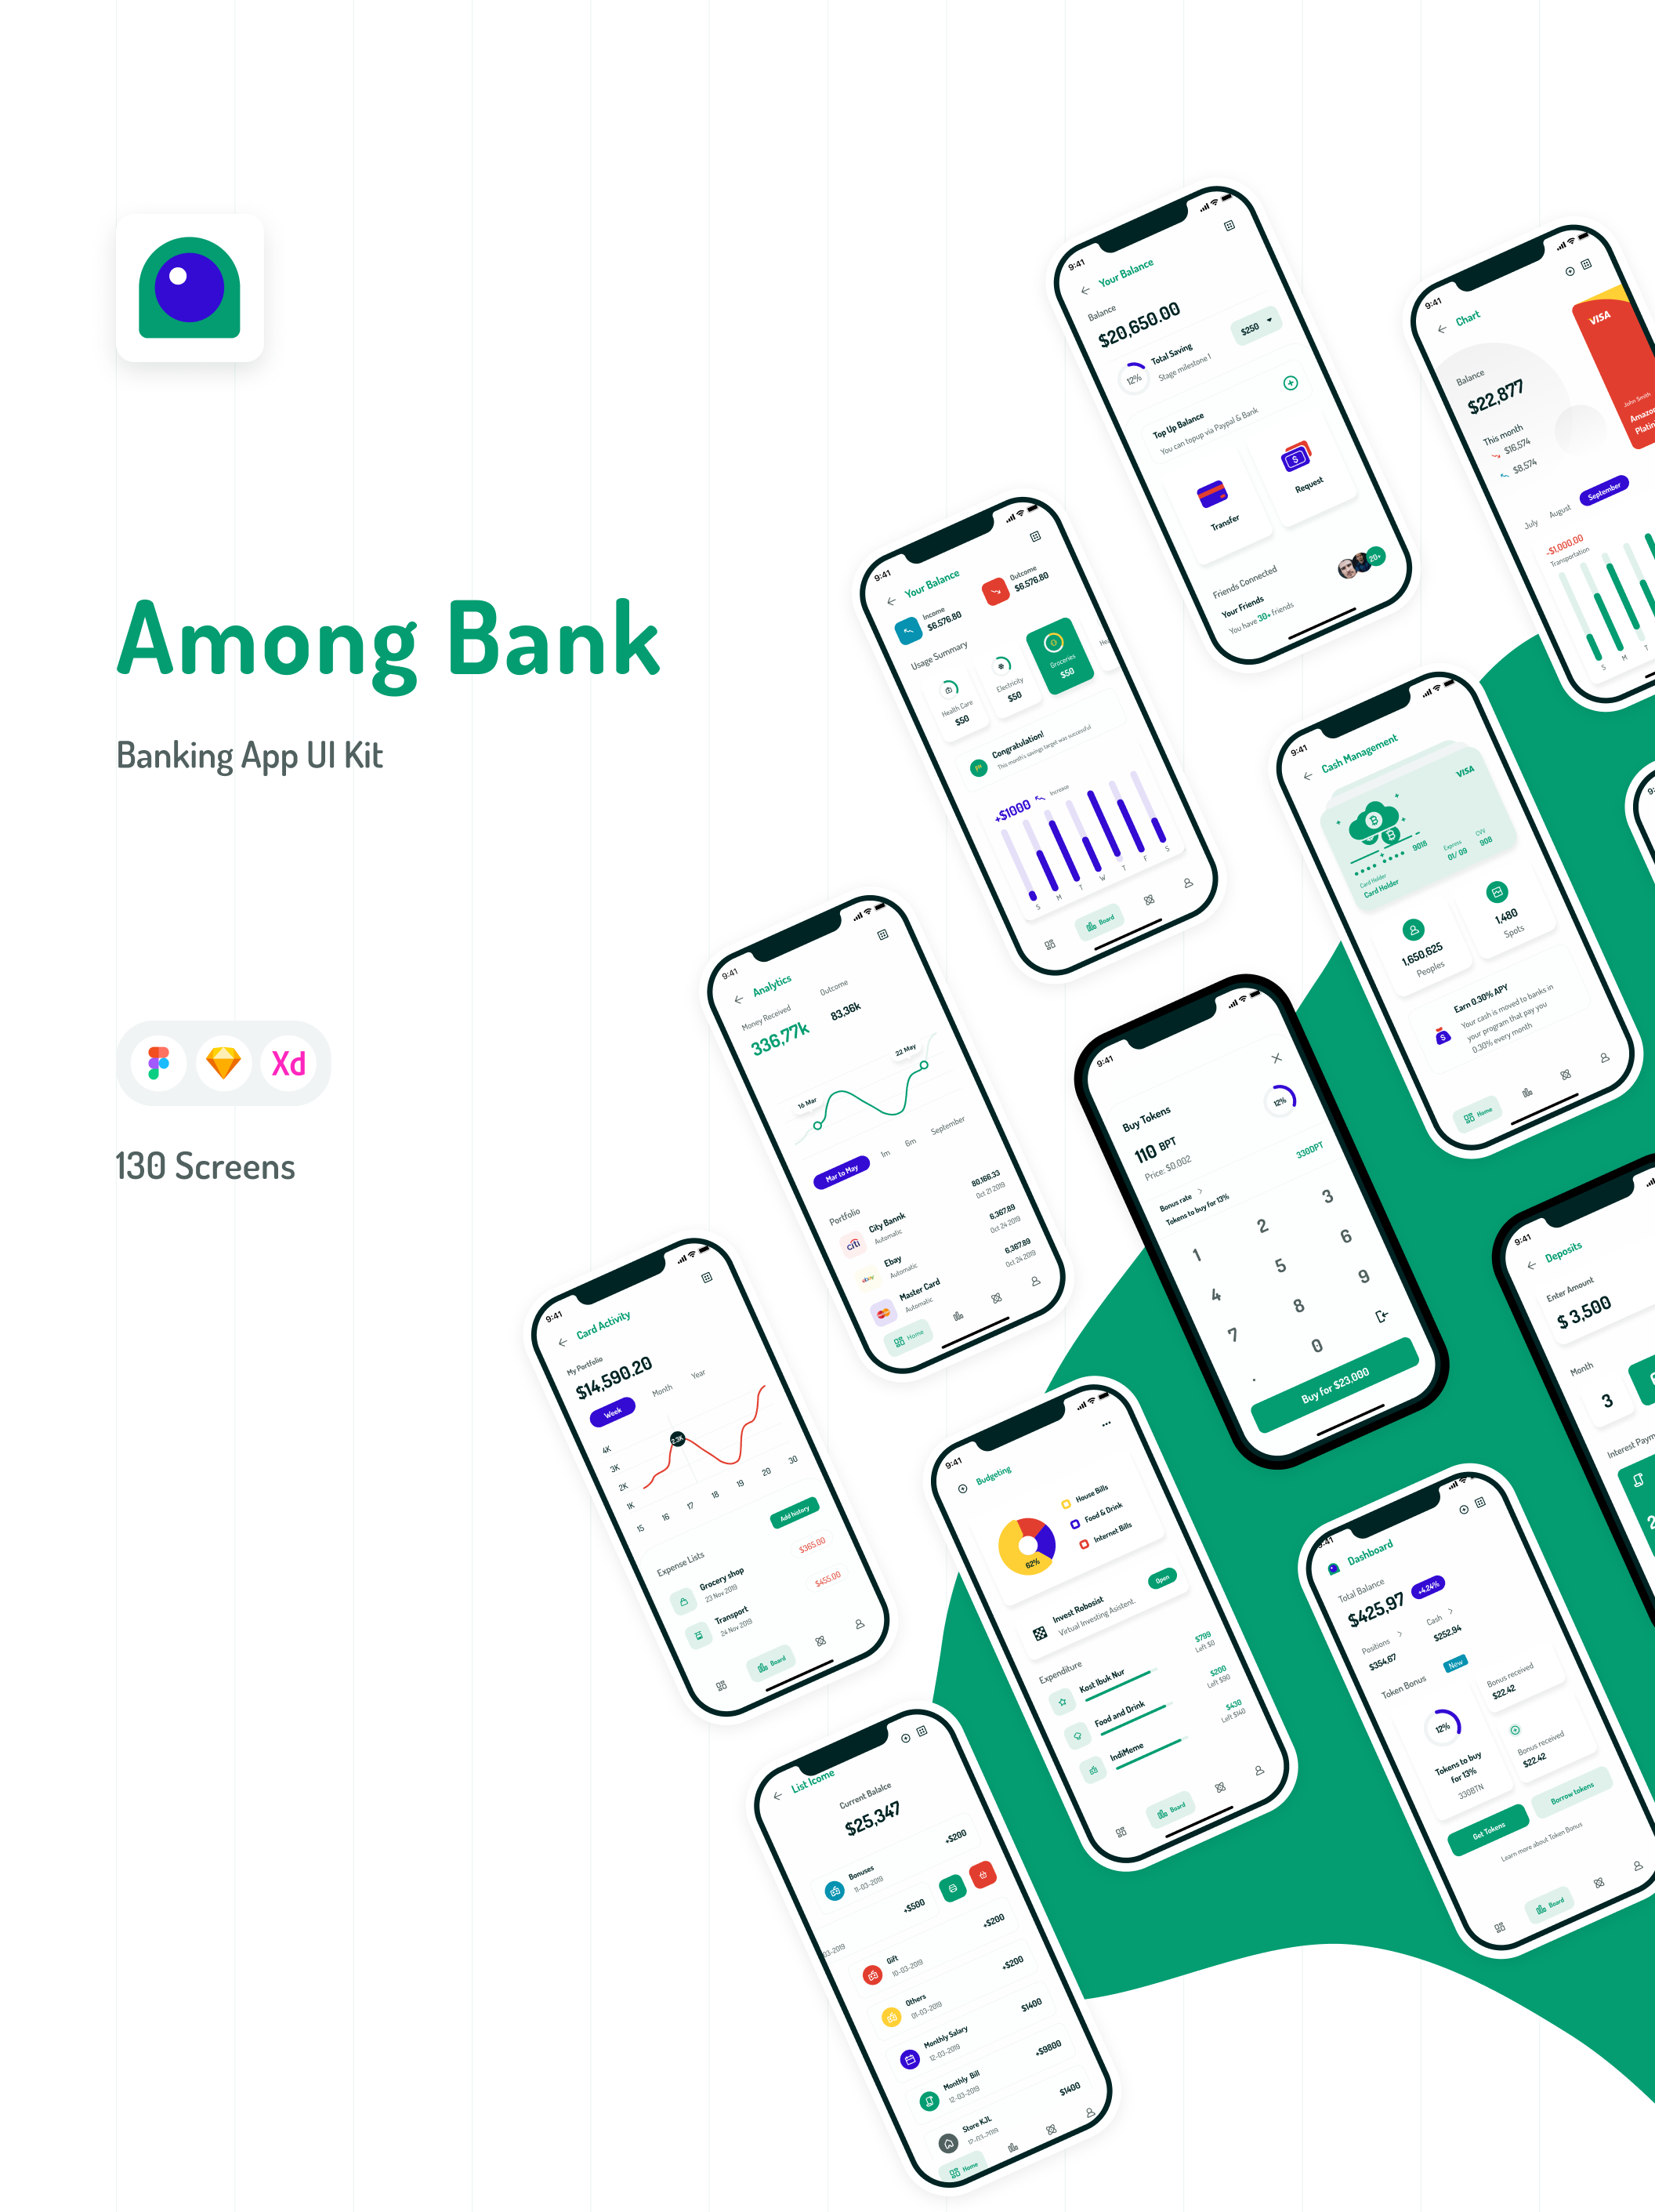 银行移动智能金融APP应用程序UI界面素材 Among Ba